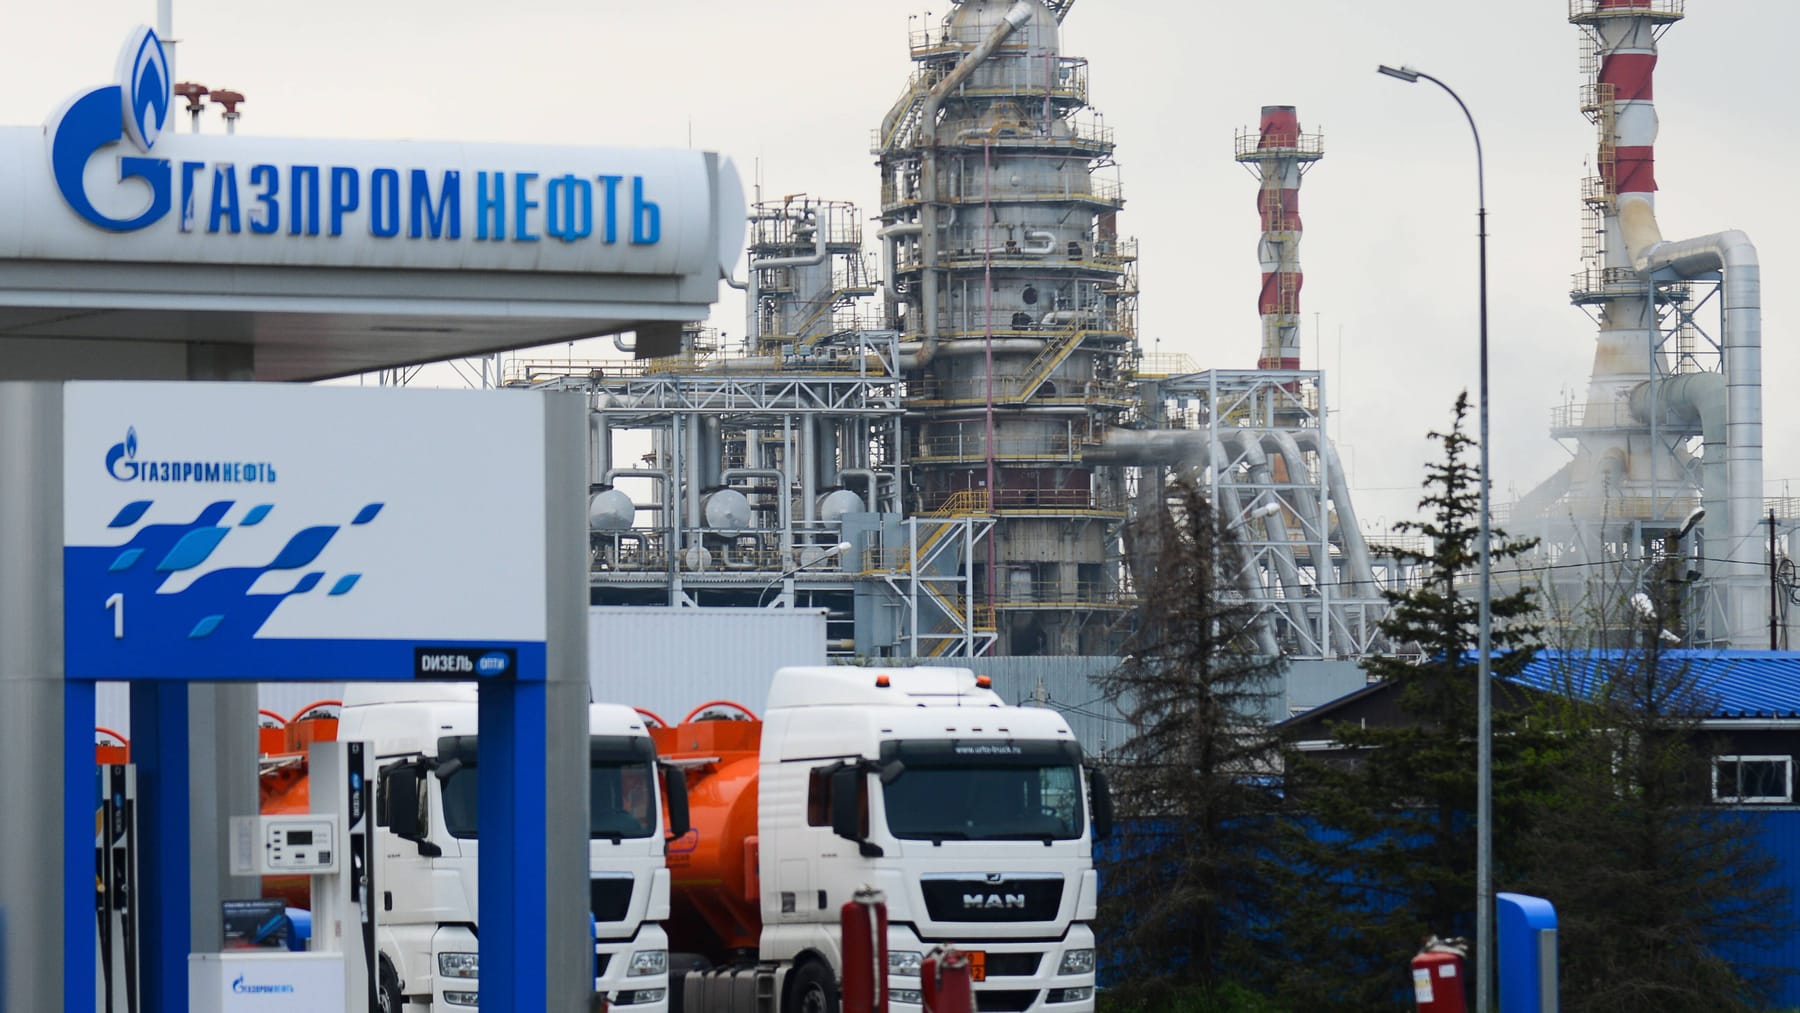 Feuer in russischer Ölraffinerie ausgebrochen